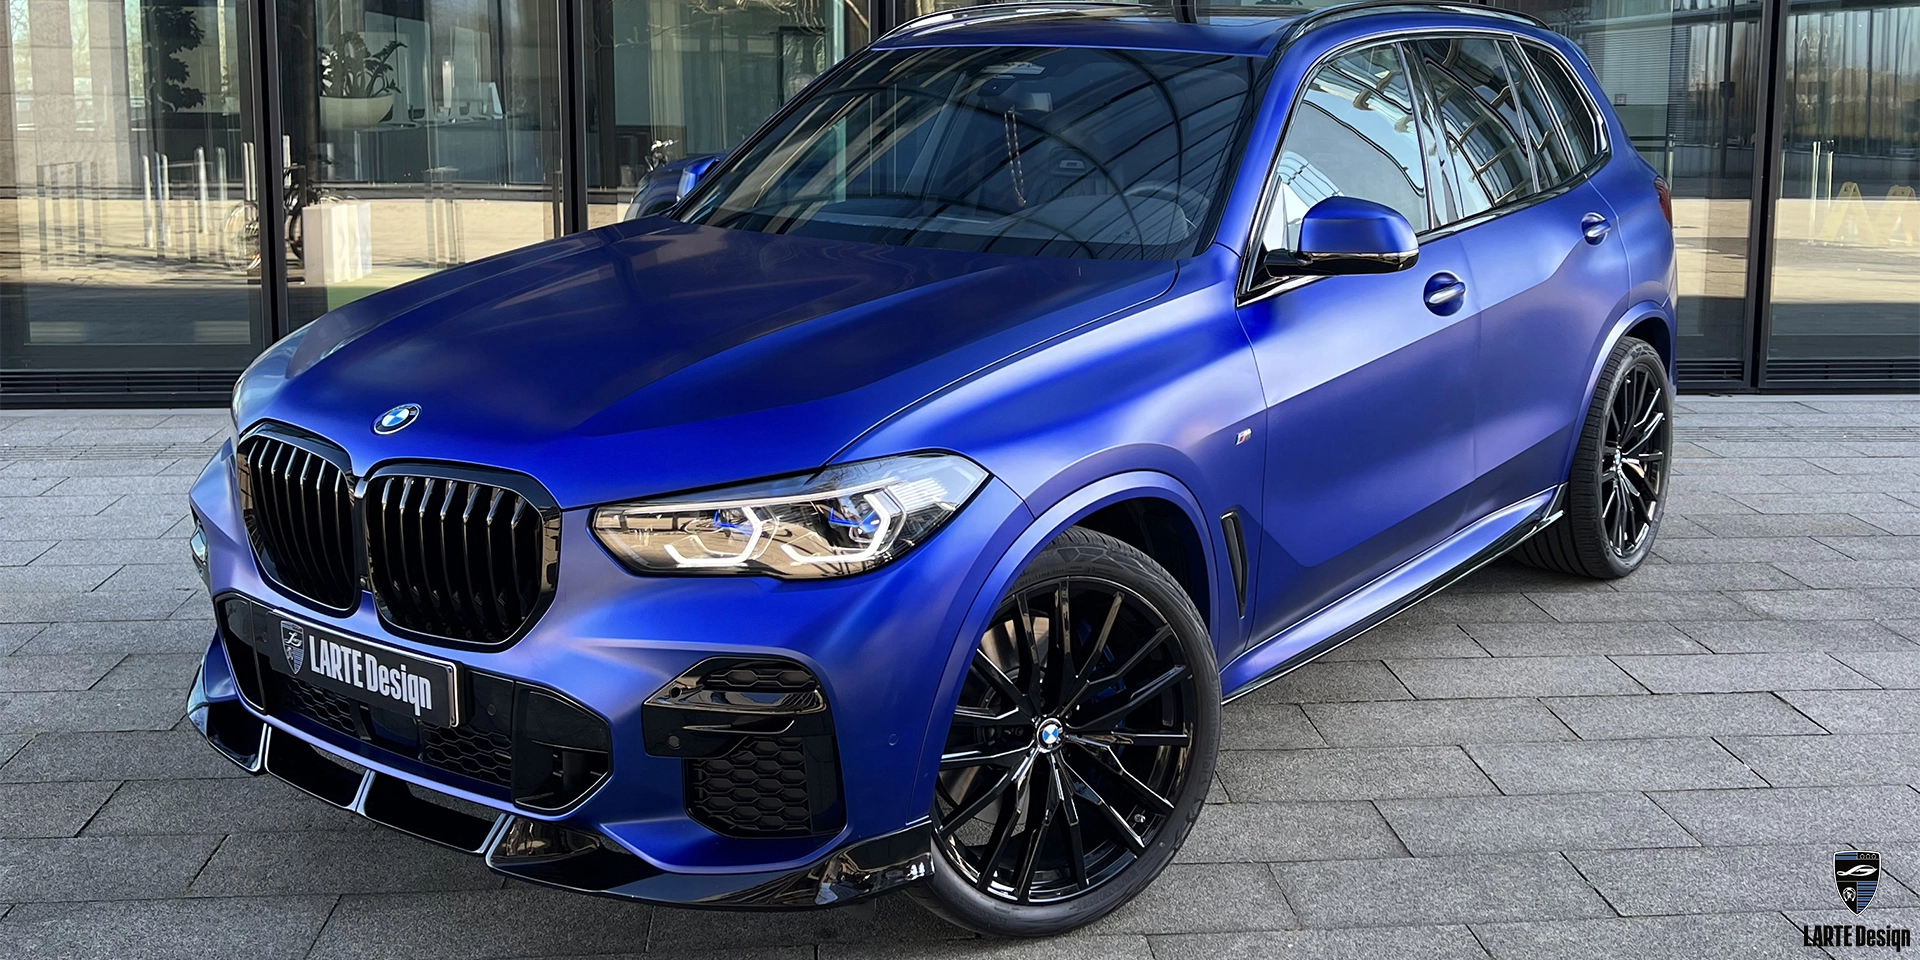 Installieren Sie eine individuelle Karosserietuning für den BMW X5 M Sport G05 Phytonic Blau Metallic 2020